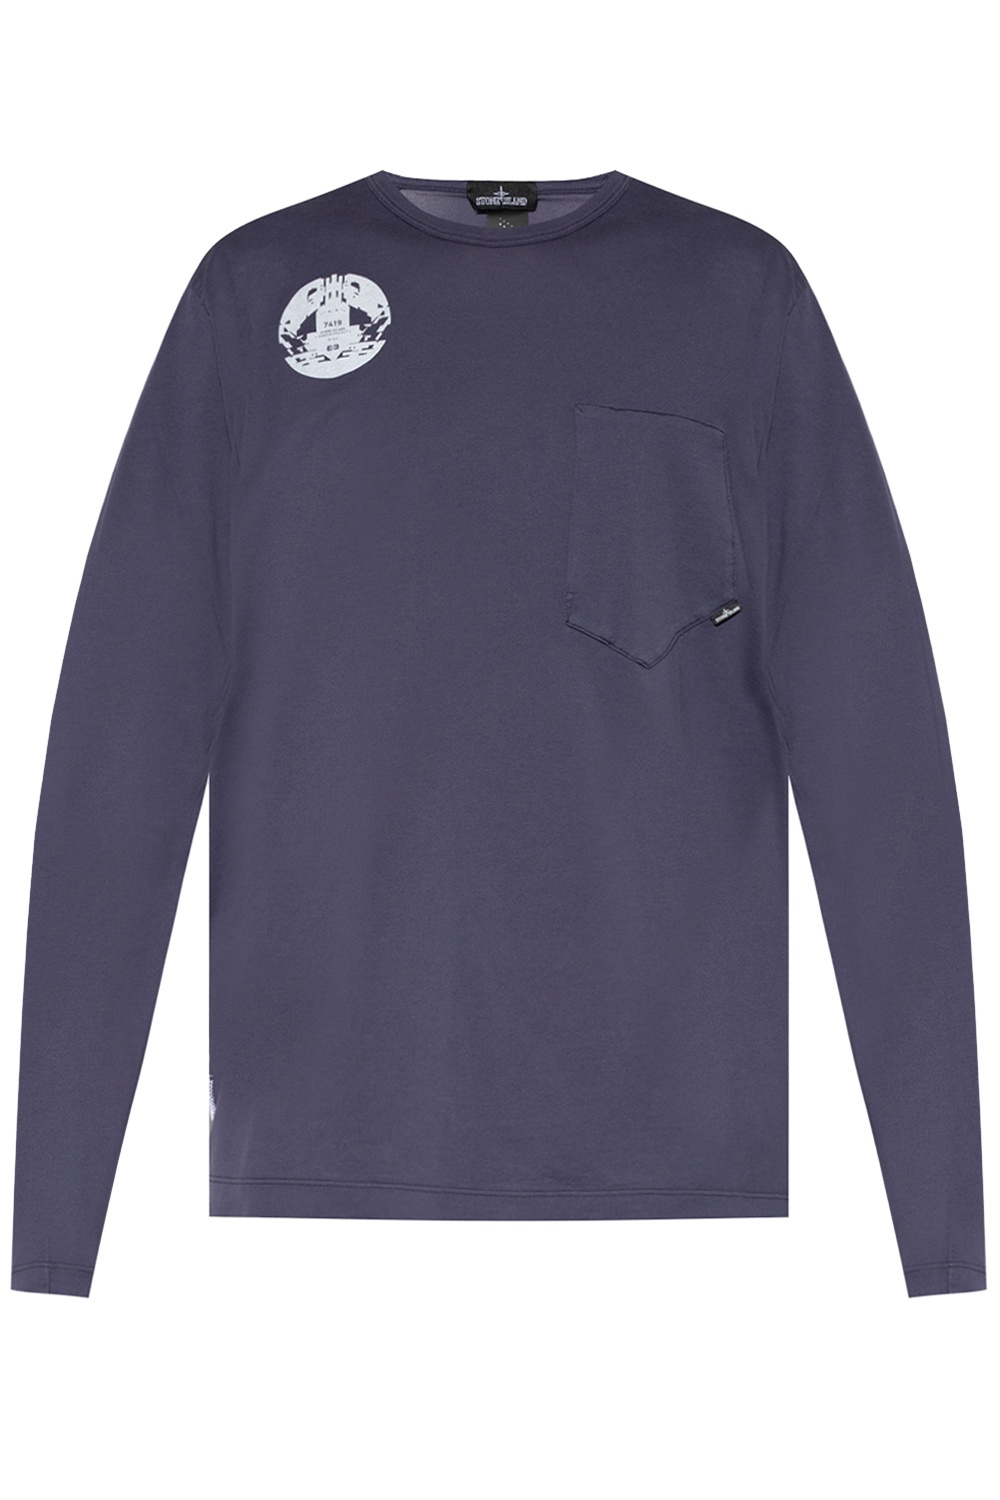 Louis Vuitton Regular Long-sleeved Shirt Raven. Size Xs